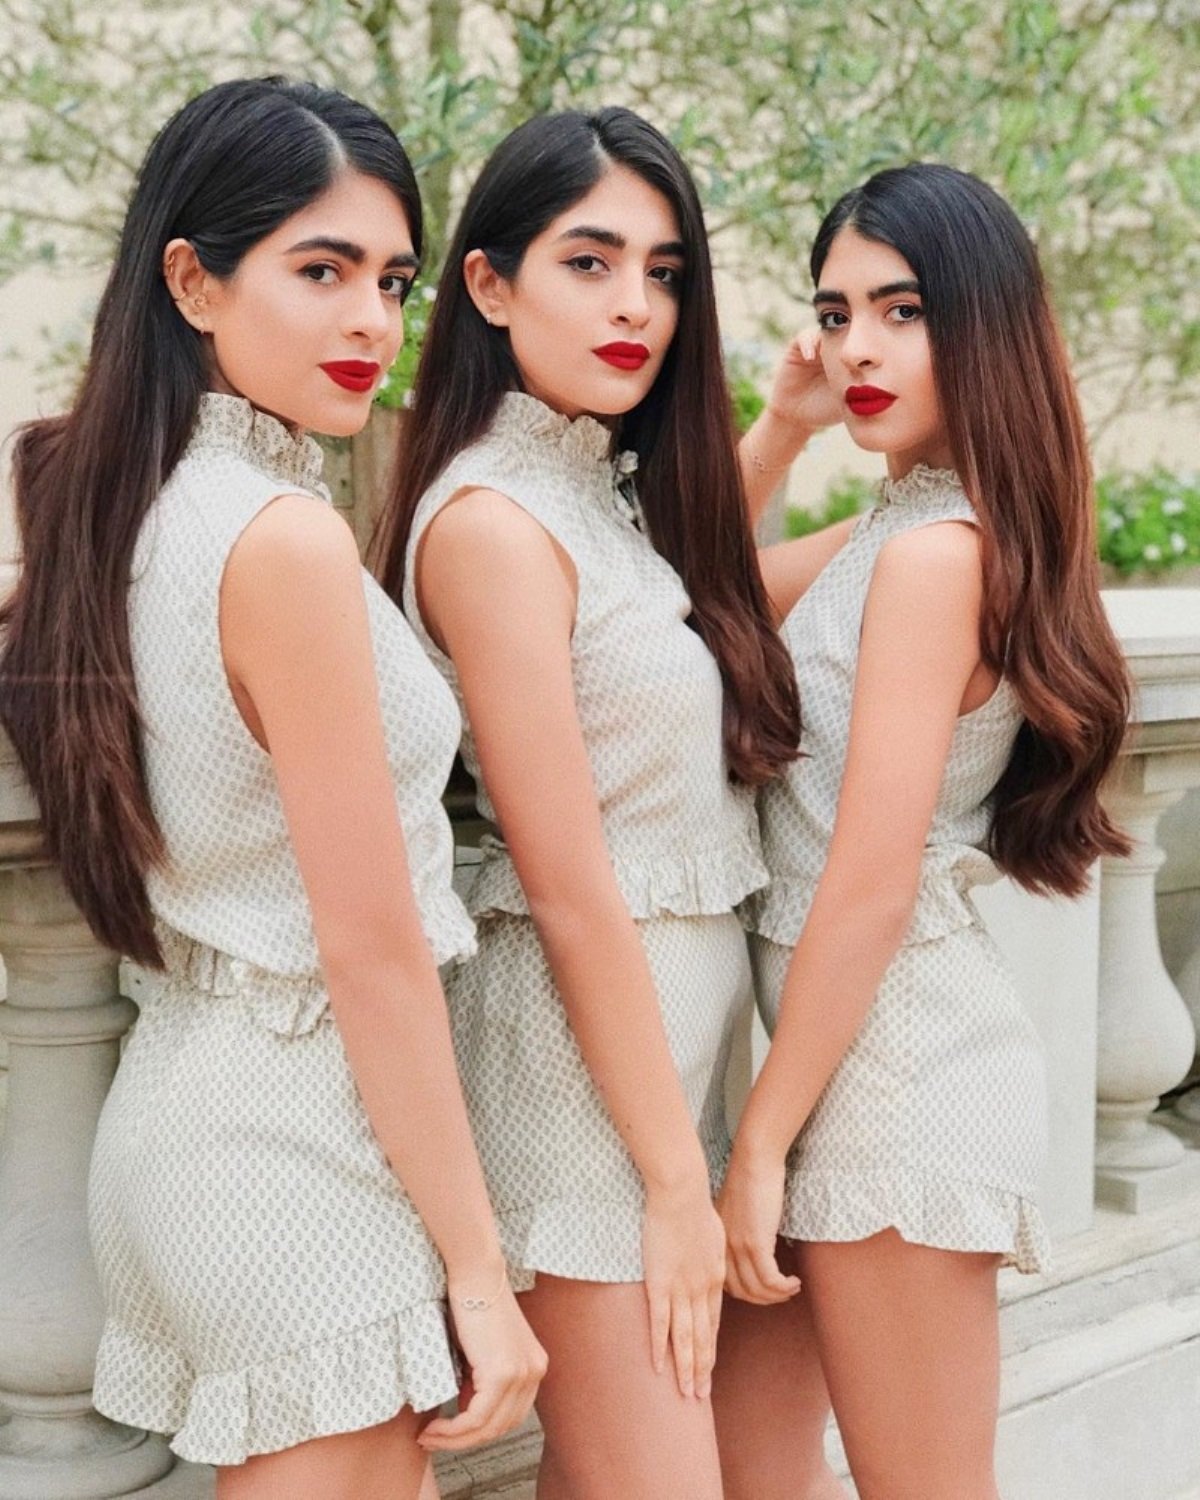 Какая девушка близнец. Три девушки. Близняшки. Девушки близняшки. Три красивые подруги.